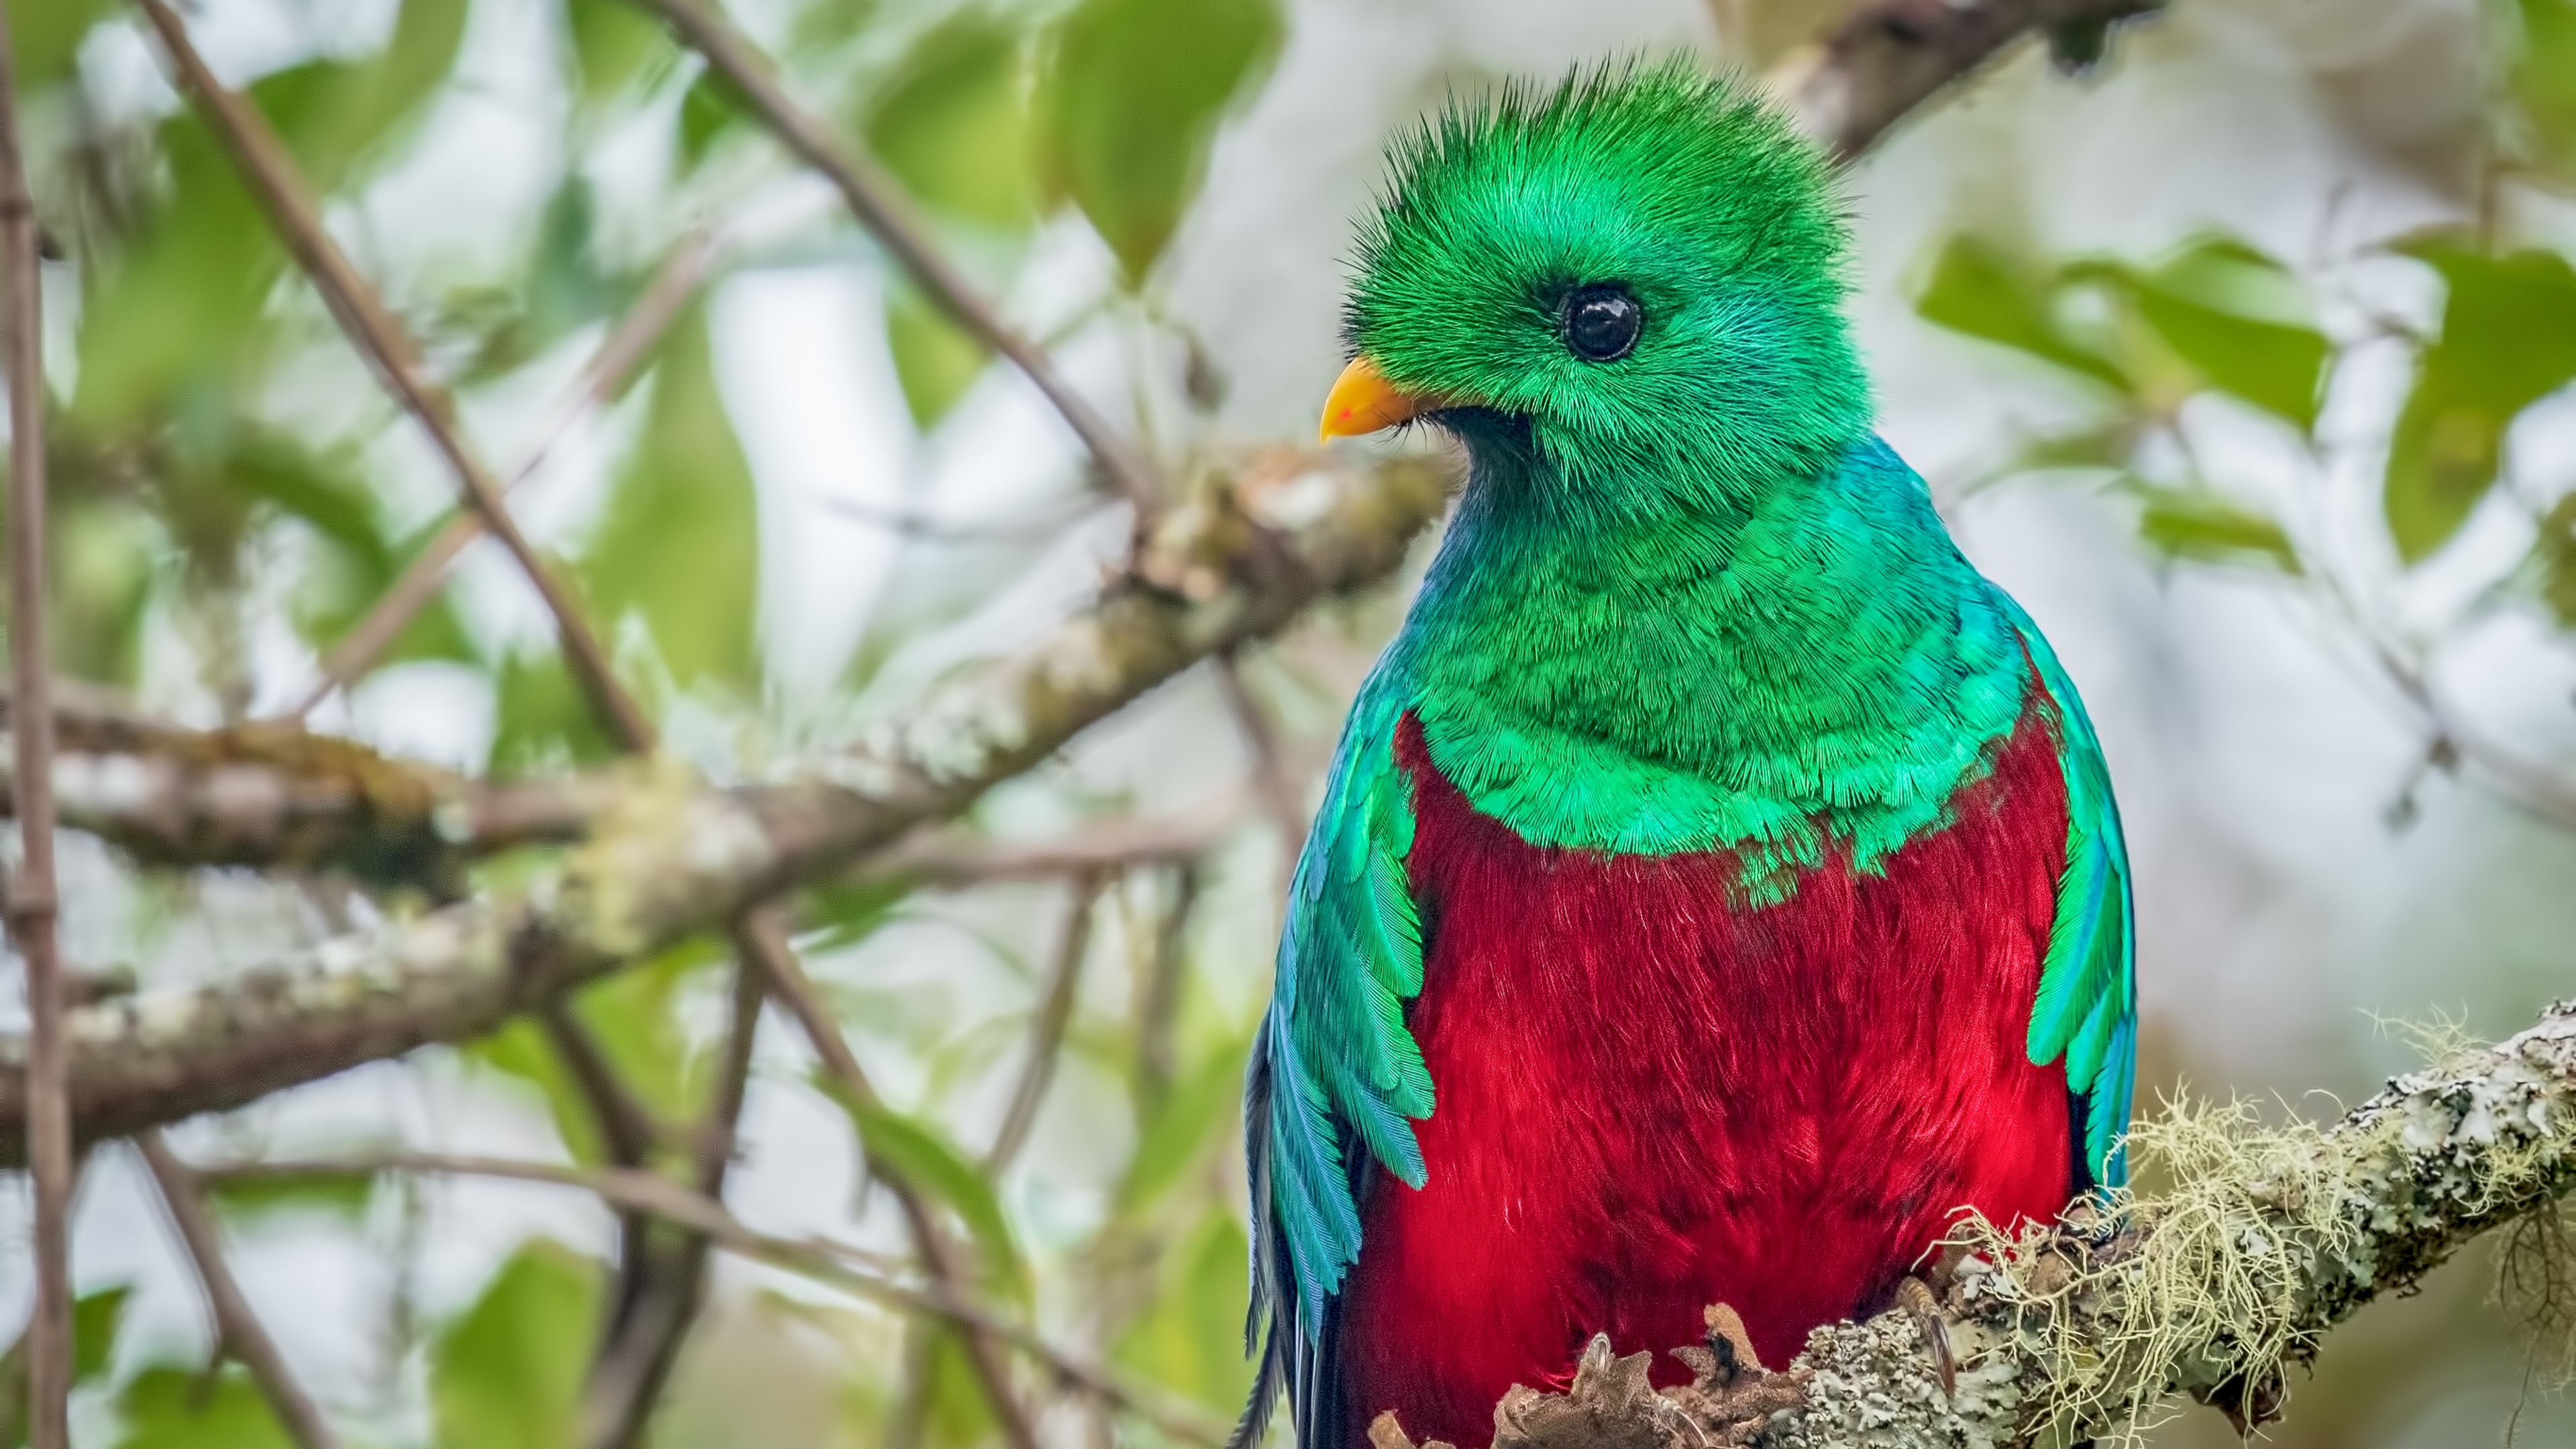 Fondos de Pantalla Quetzal Resplandeciente, Pájaros, Quetzal, Ave, Pico,  Imágenes y Fotos Gratis